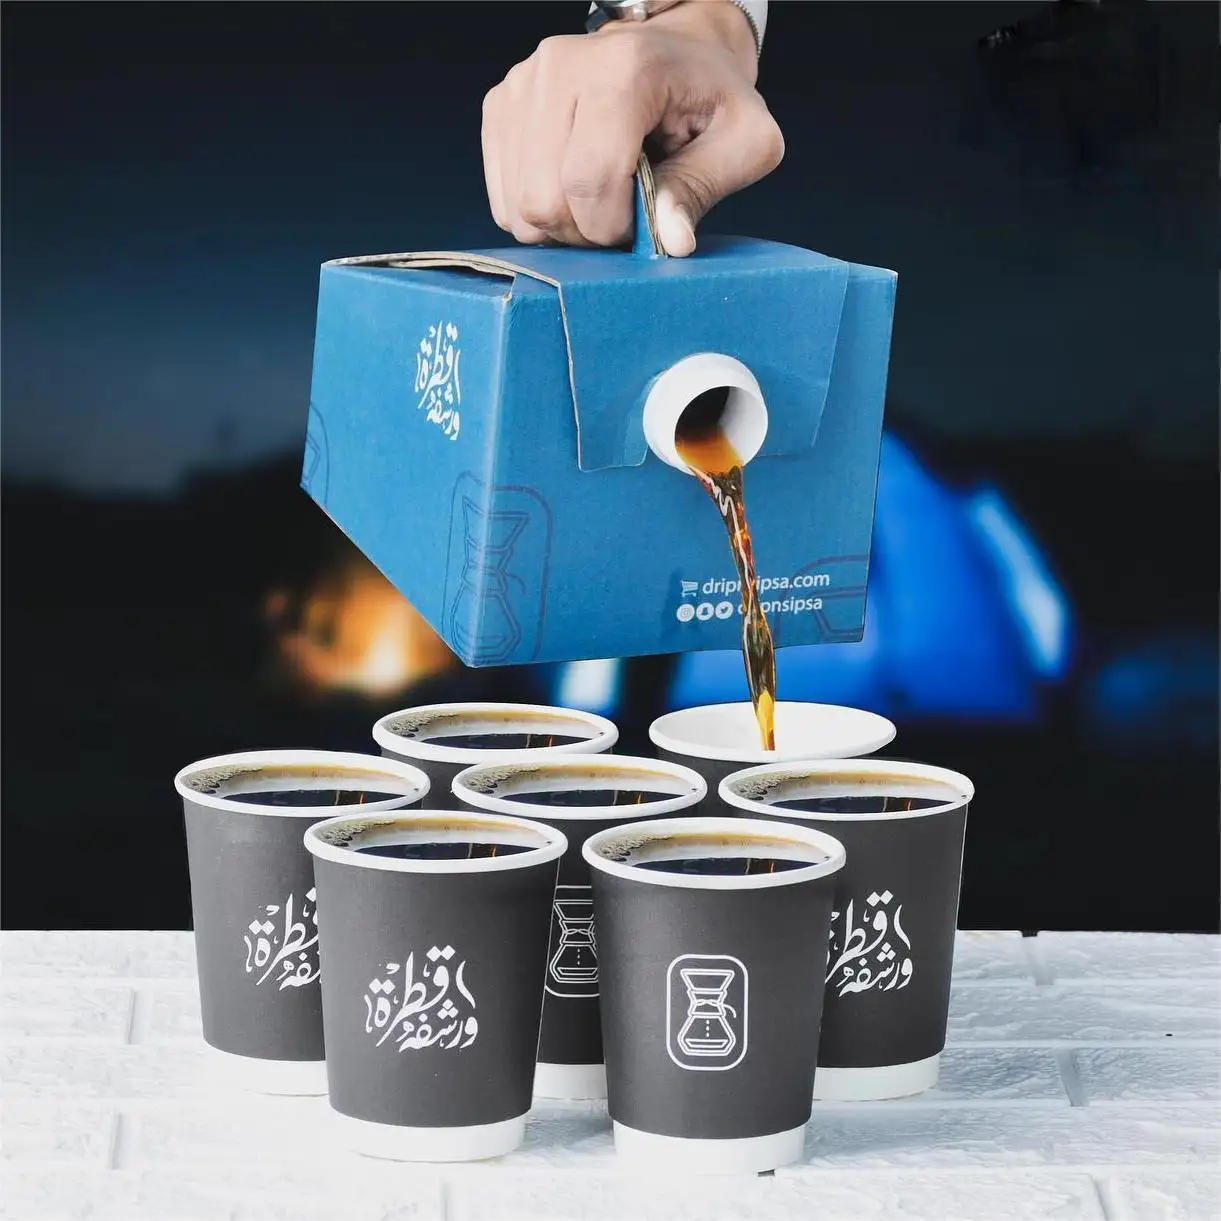 カスタムロゴ128オンスアルミニウム注ぎ口ポーチコーヒーバッグボックス内バルブ付きコーヒーワインジュース水包装カップホルダー付き